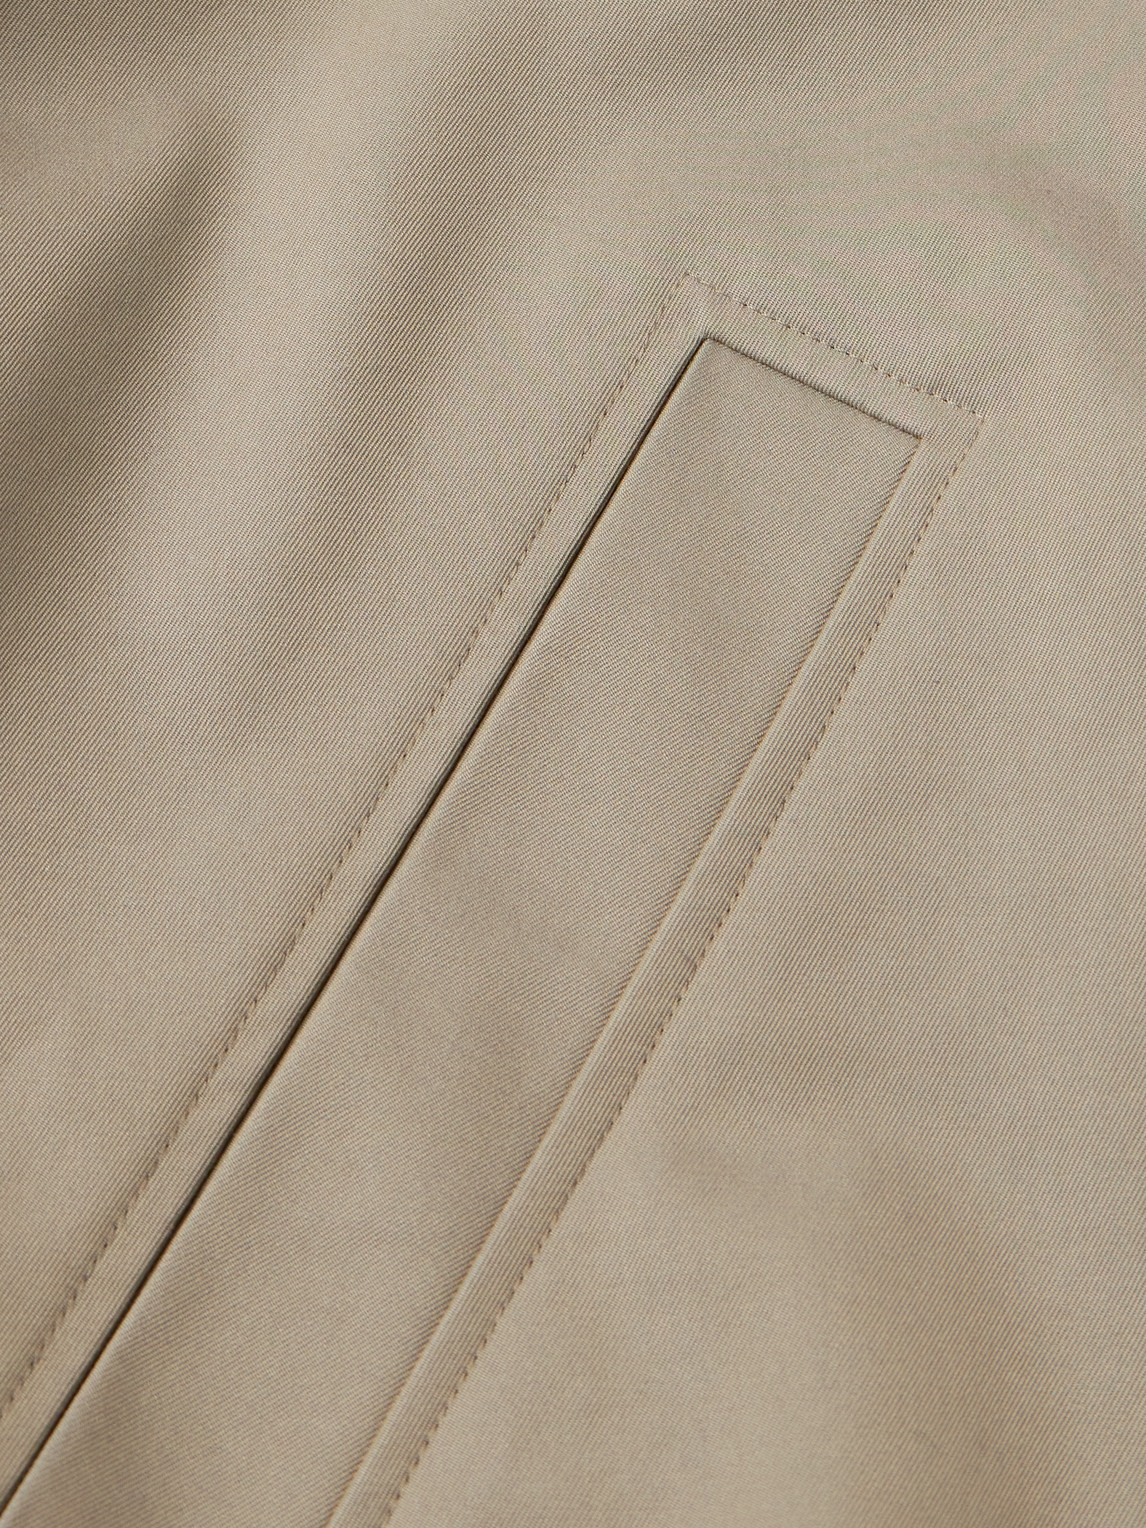 Shop Auralee Finx Cotton And Silk-blend Twill Bomber Jacket In Neutrals